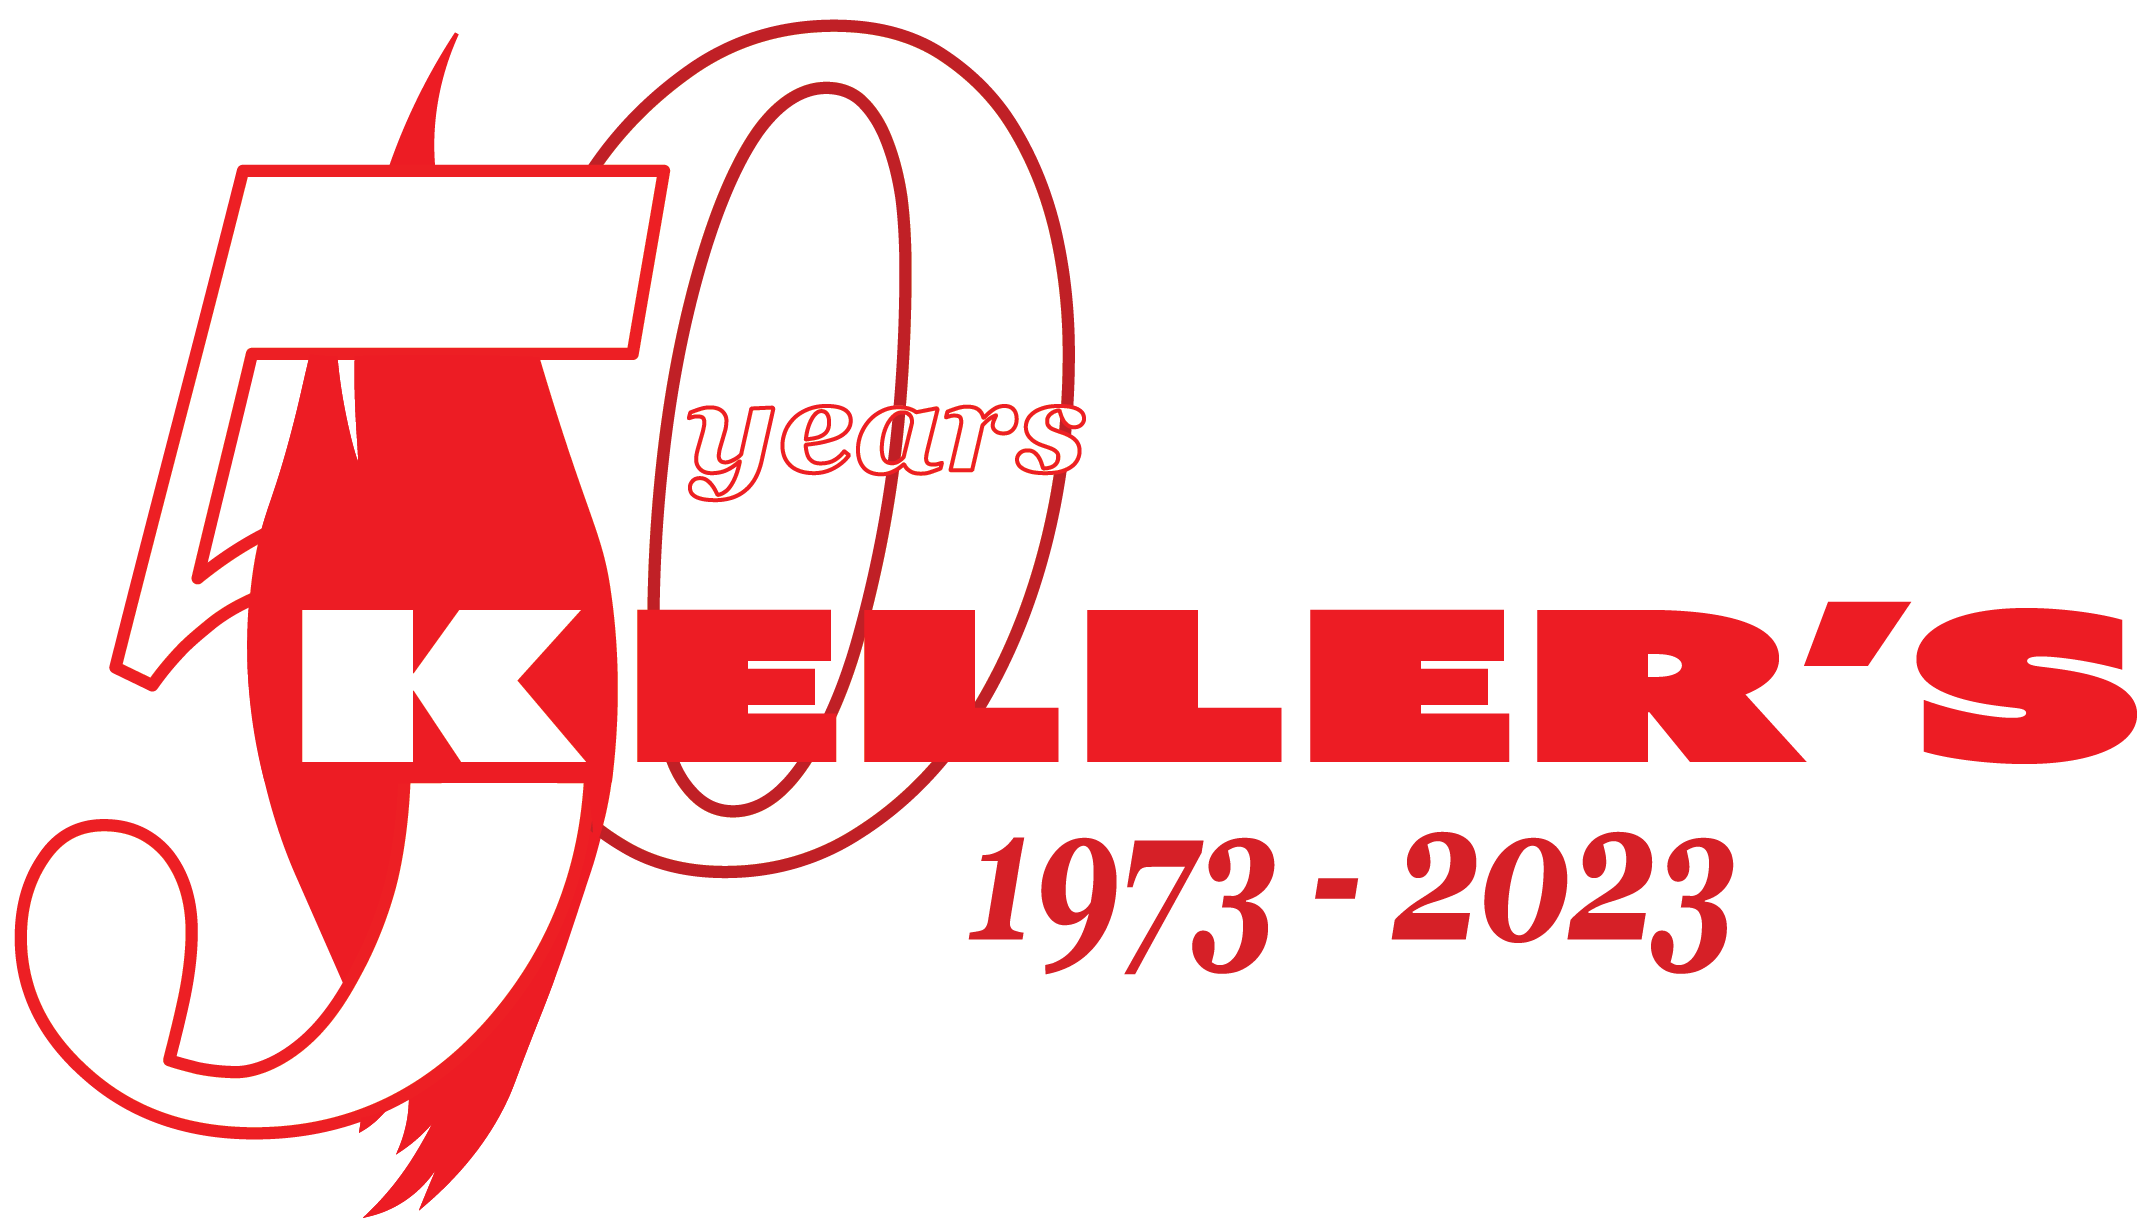 Keller's LLC